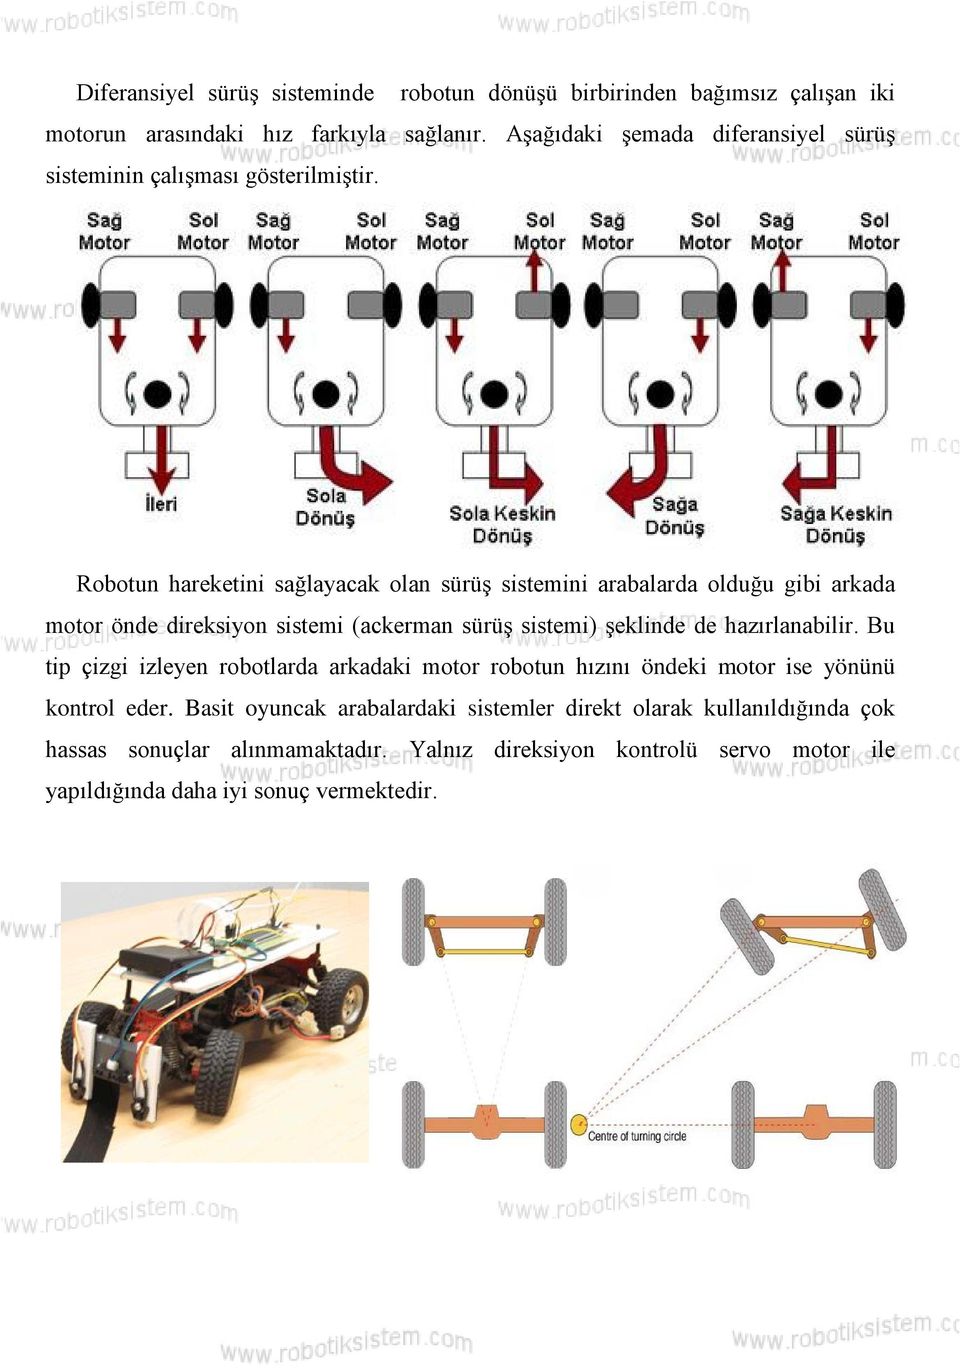 Robotun hareketini sağlayacak olan sürüş sistemini arabalarda olduğu gibi arkada motor önde direksiyon sistemi (ackerman sürüş sistemi) şeklinde de hazırlanabilir.